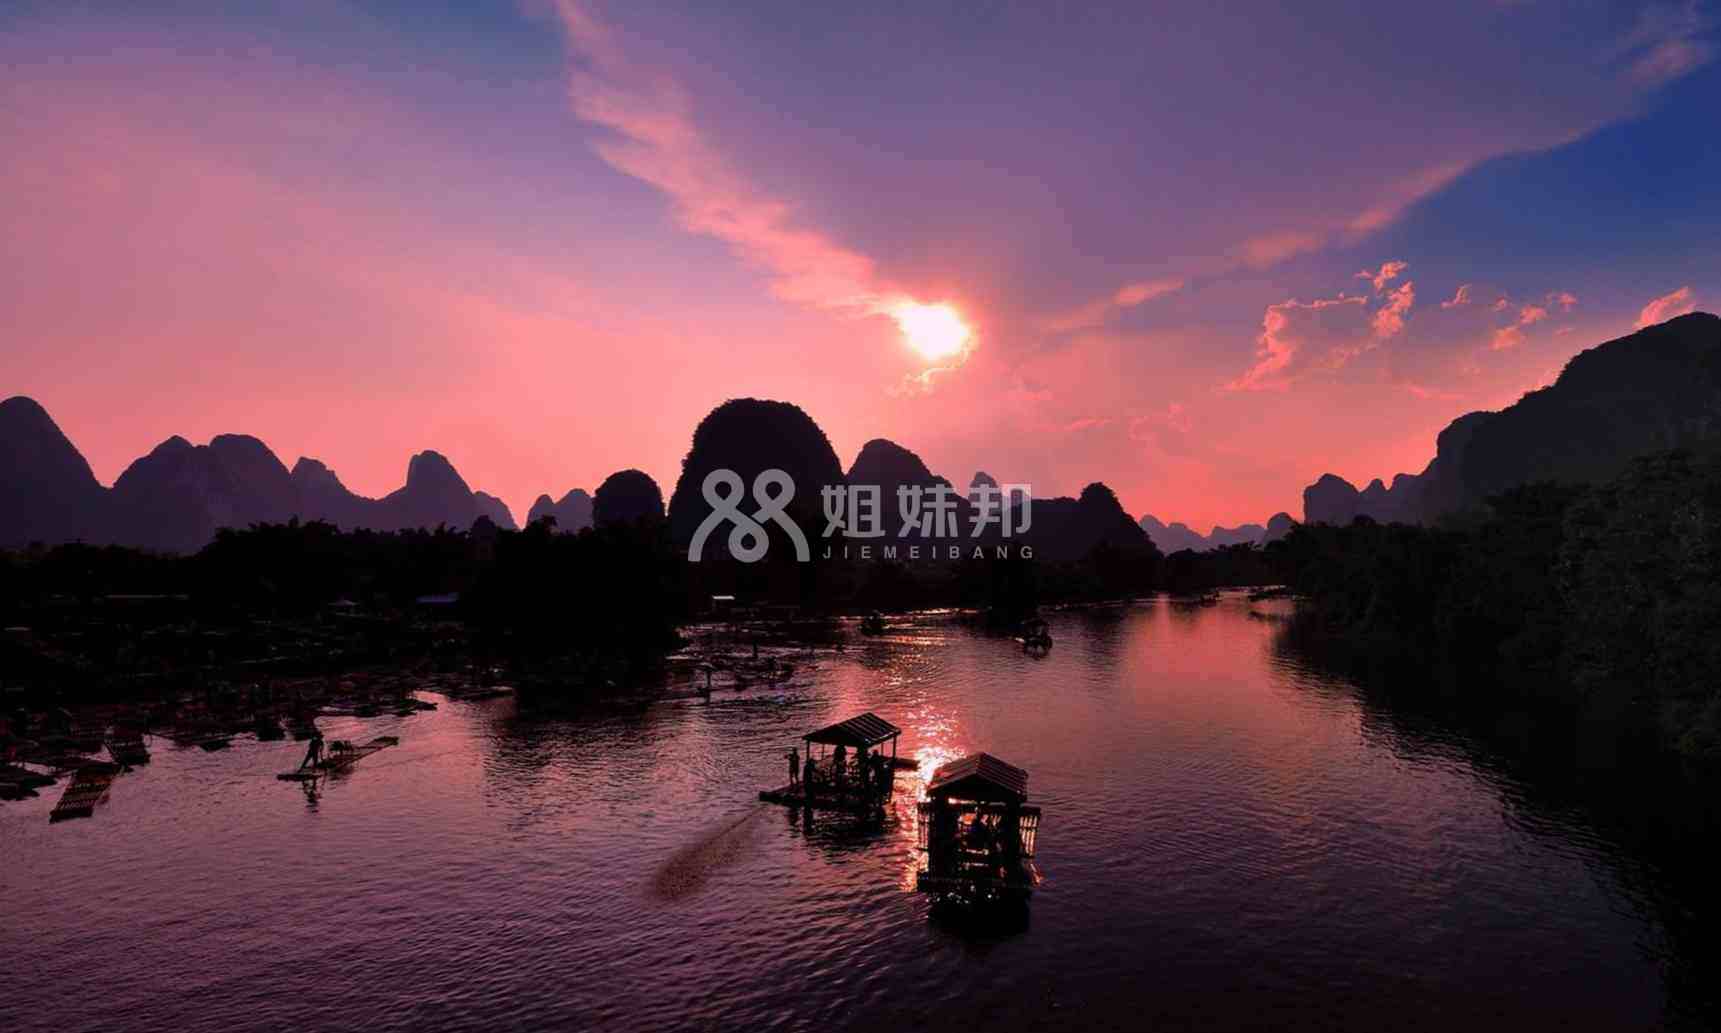 桂林不仅风景优美且医疗技术也发达